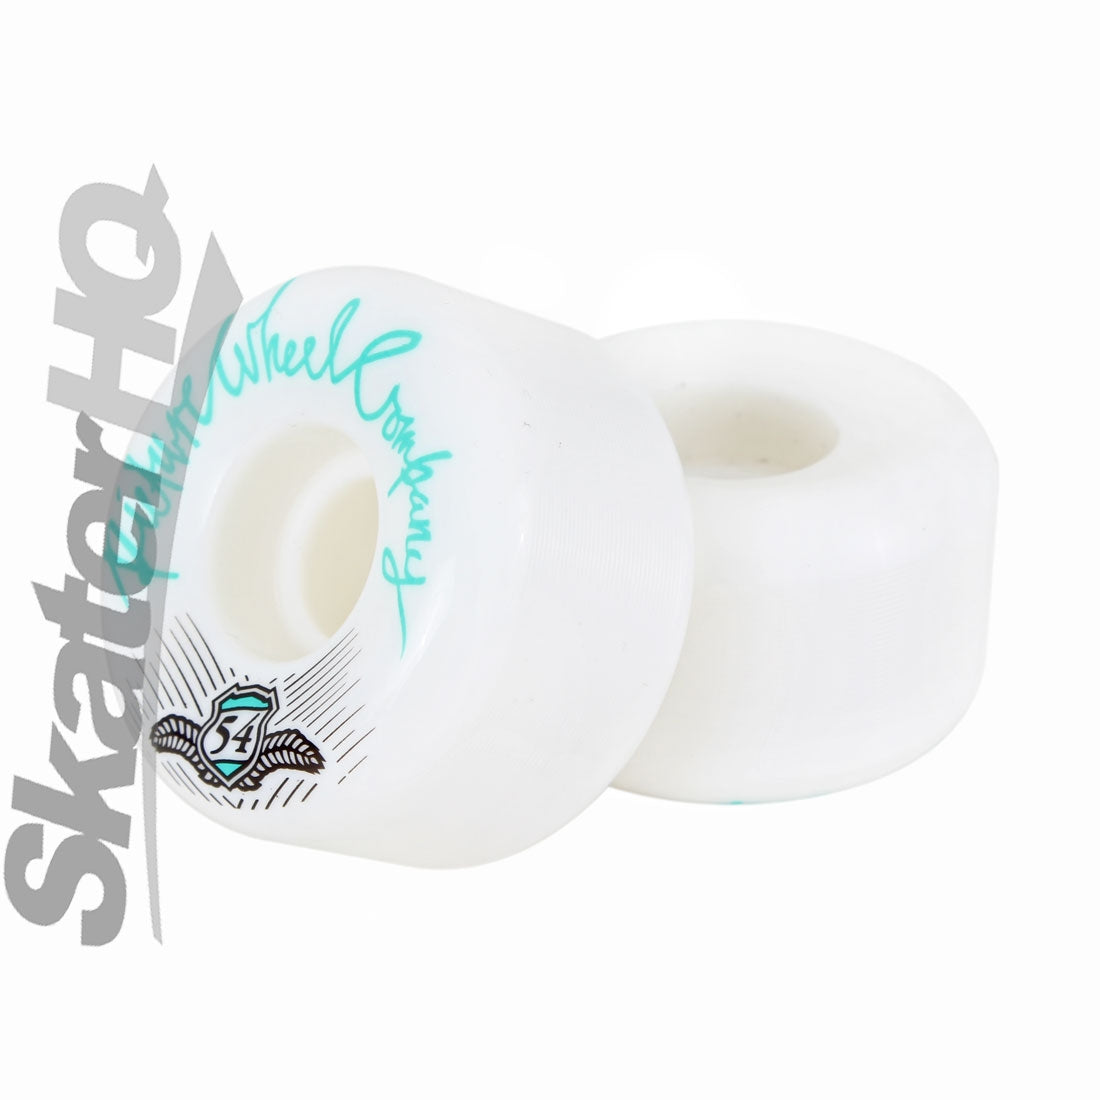 Picture PSU Shield 54mm - Green Skateboard Wheels